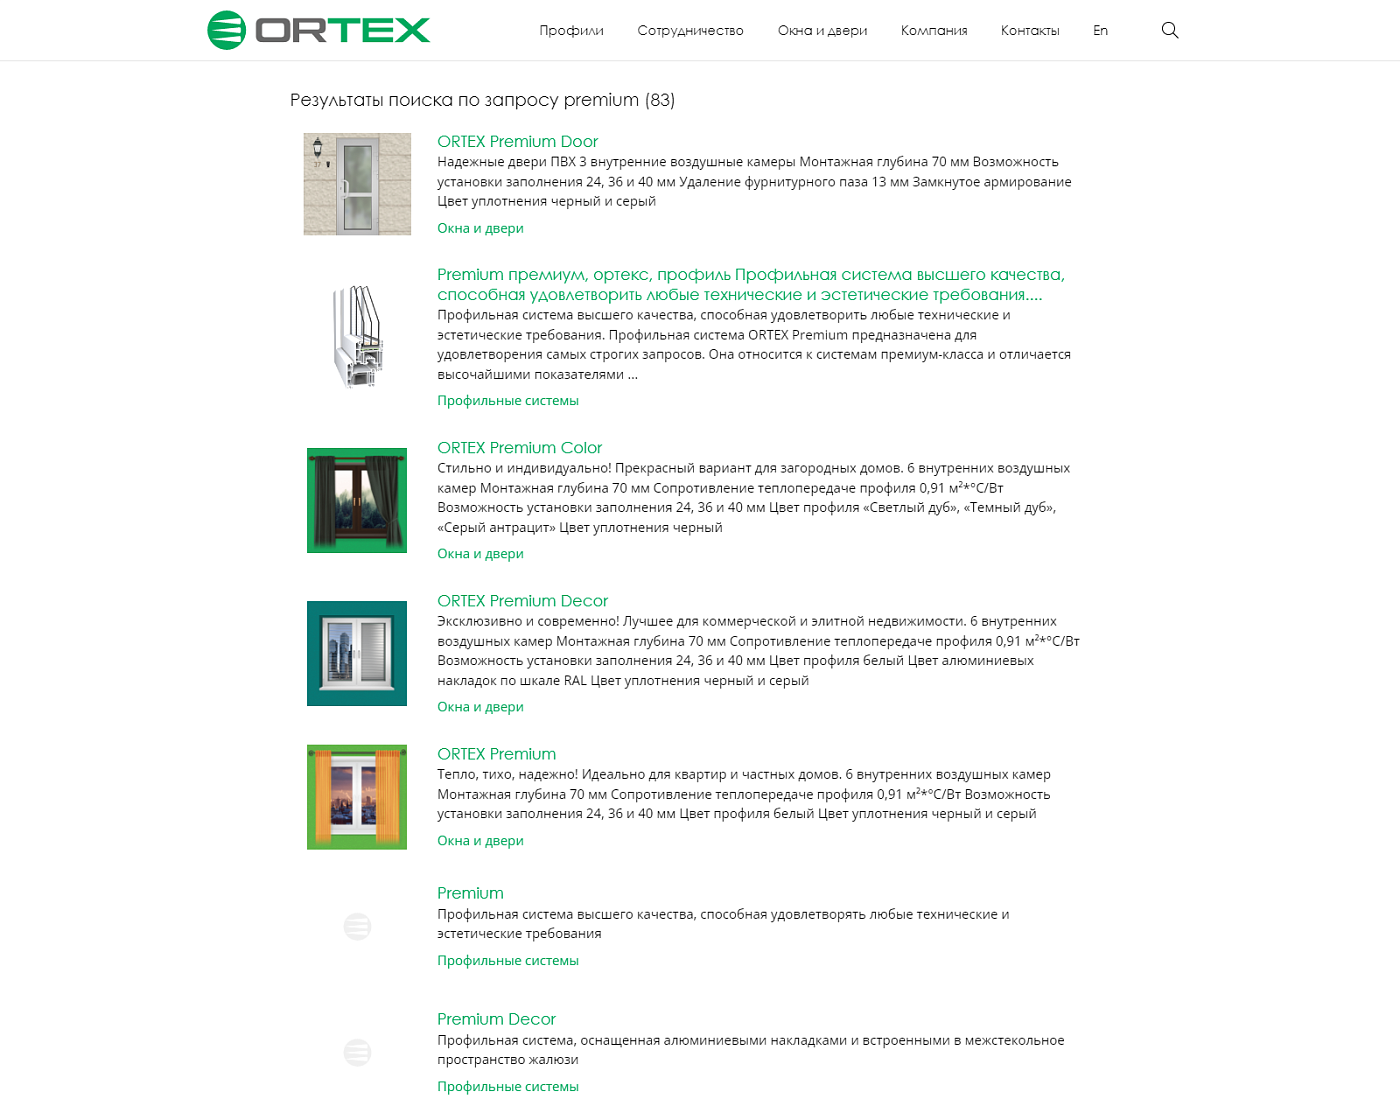 Поиск на сайте ortex.org ﻿Если клиент не найдет нужную информацию здесь, можно перейти к списку результатов.